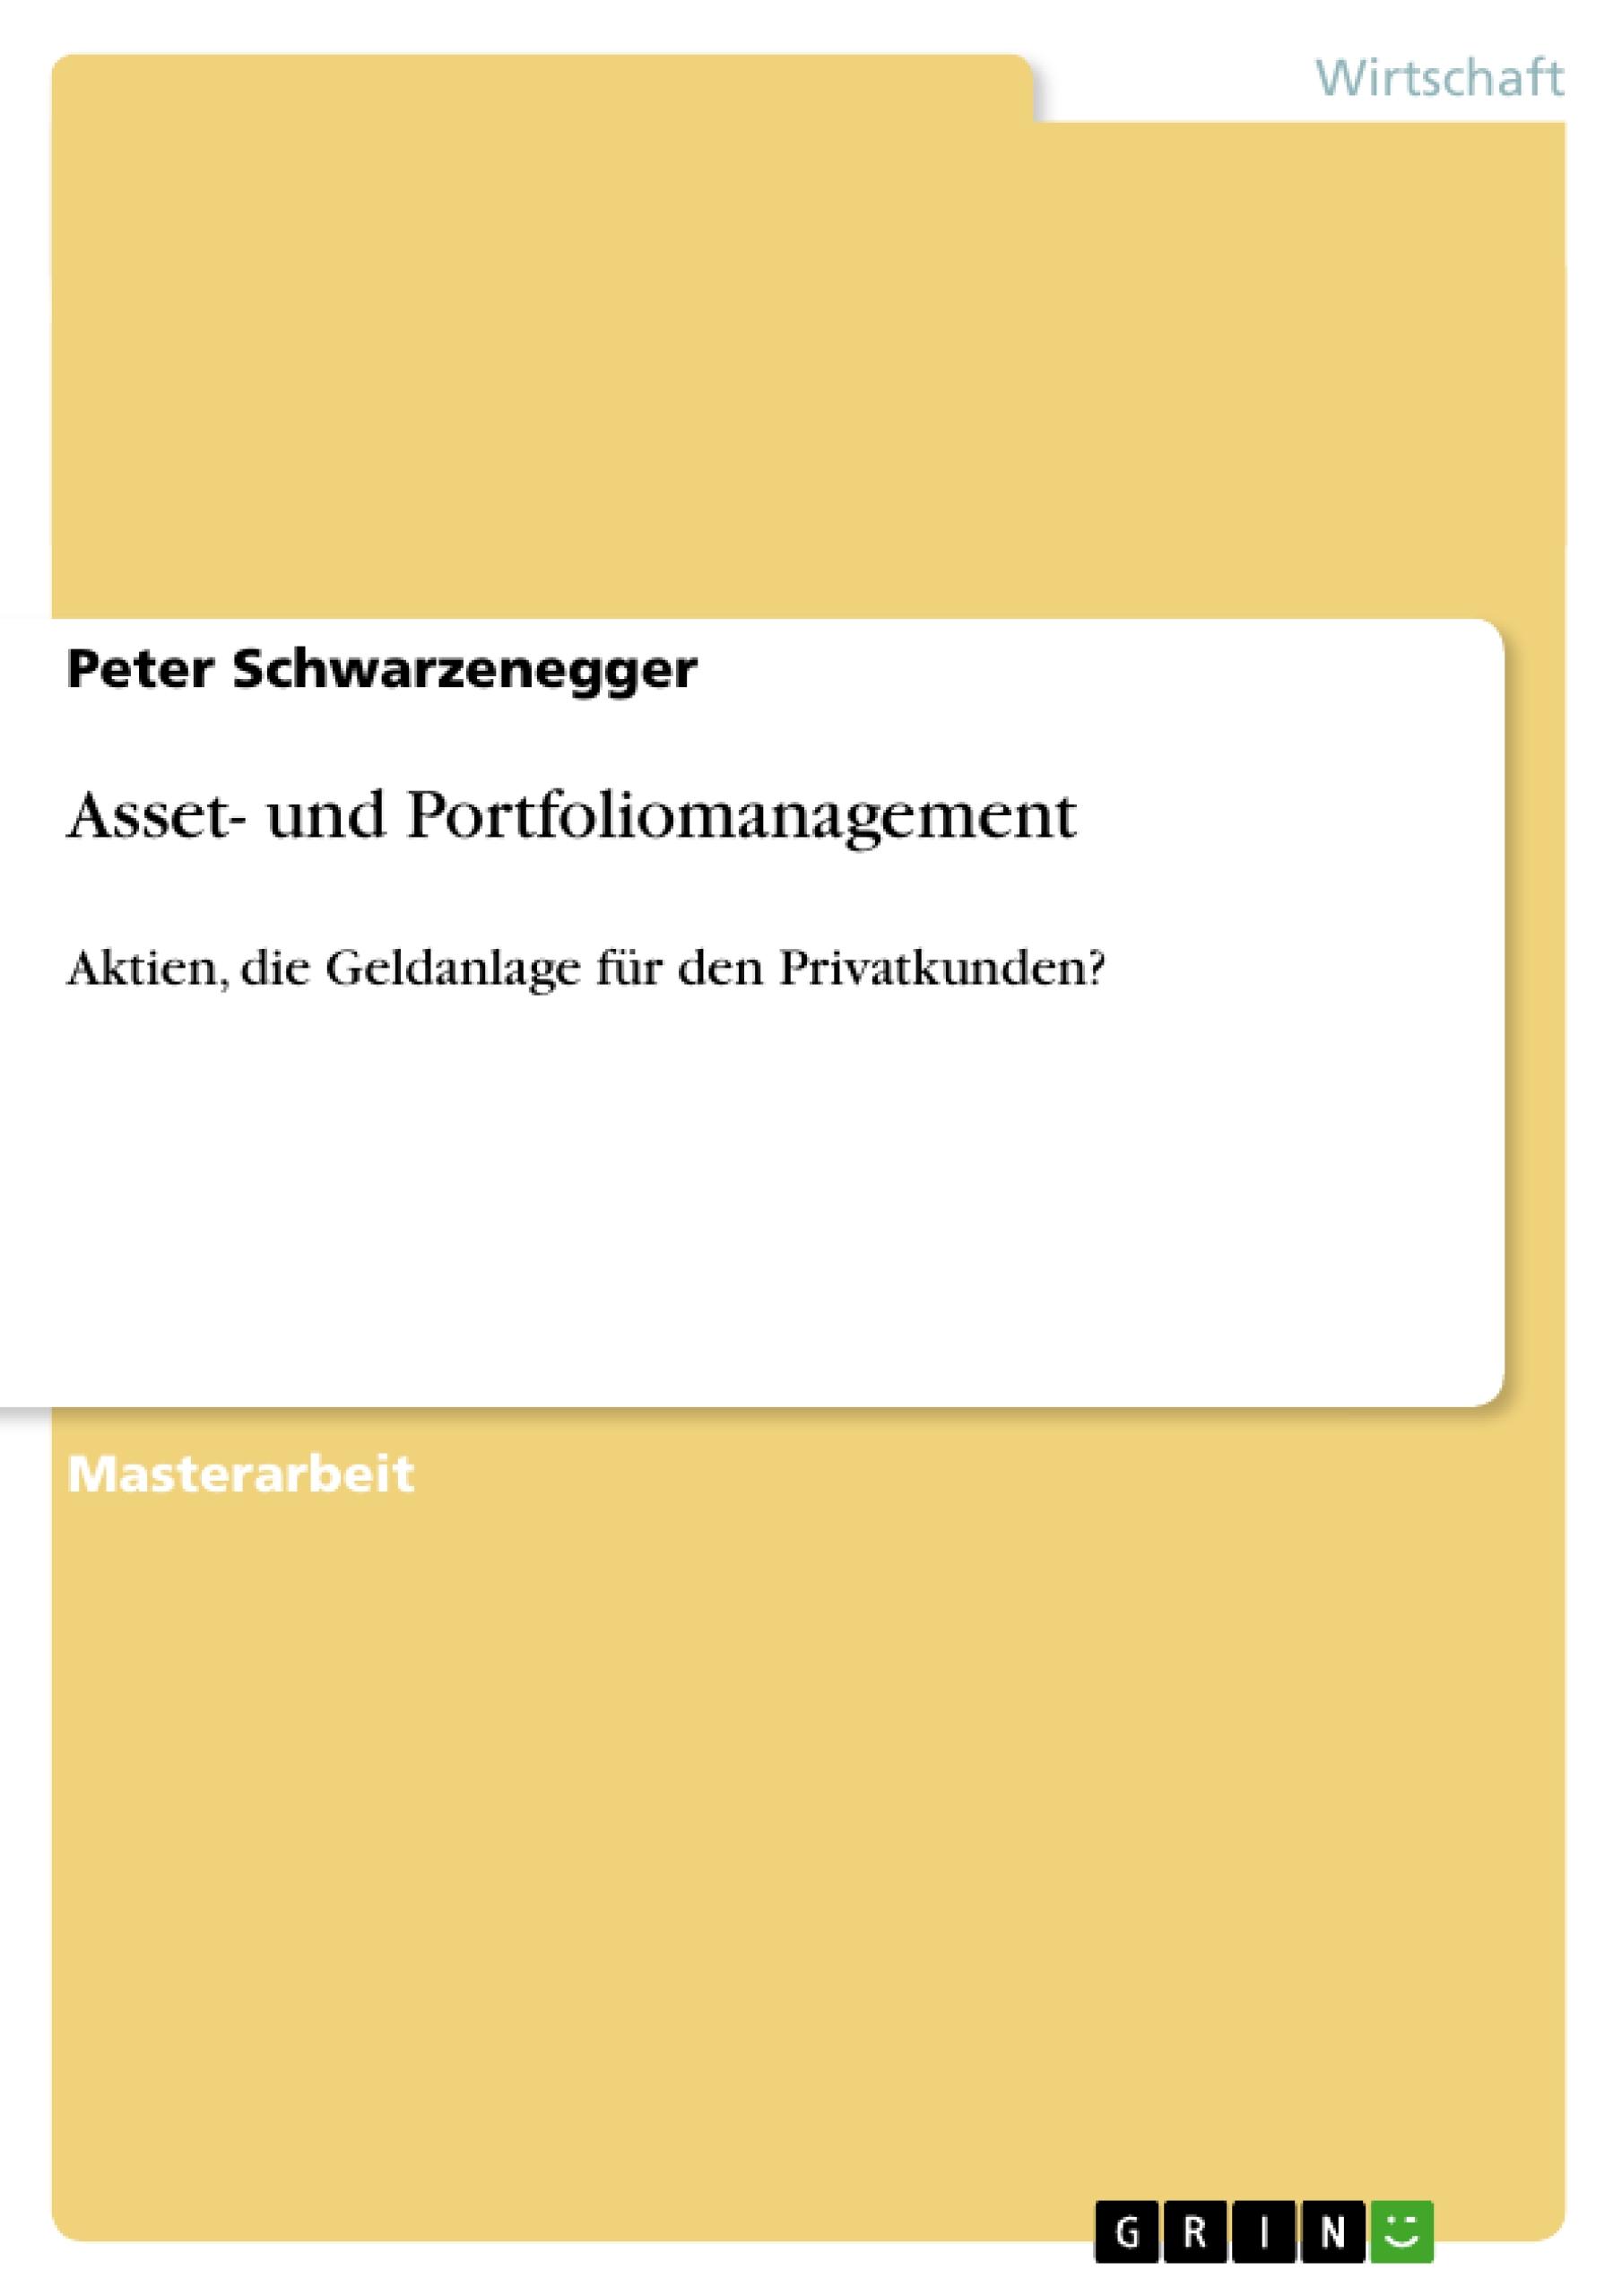 Asset- und Portfoliomanagement - Schwarzenegger, Peter